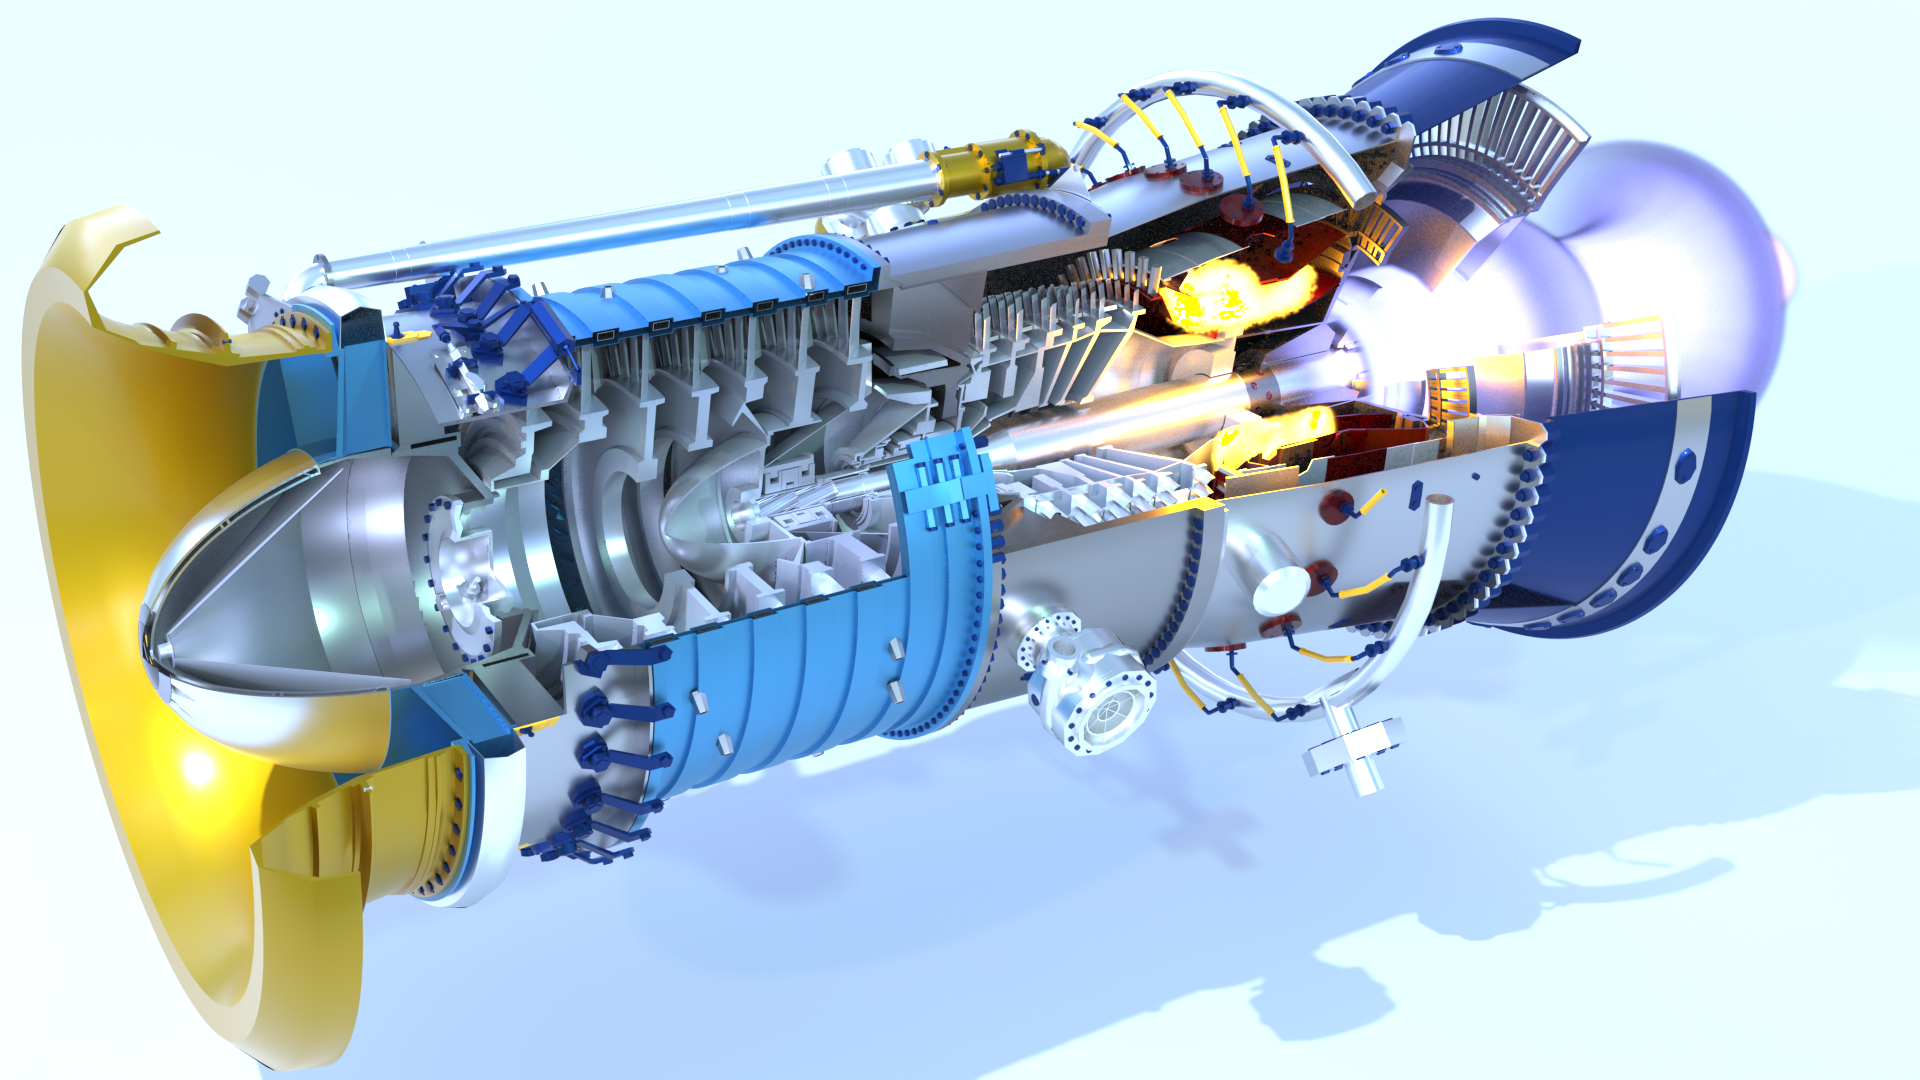 Части двигателя самолета. Турбореактивный двухконтурный двигатель hf118. Газовая турбина дг90. Ротор турбореактивного двигателя. Турбина ГТД-110м.